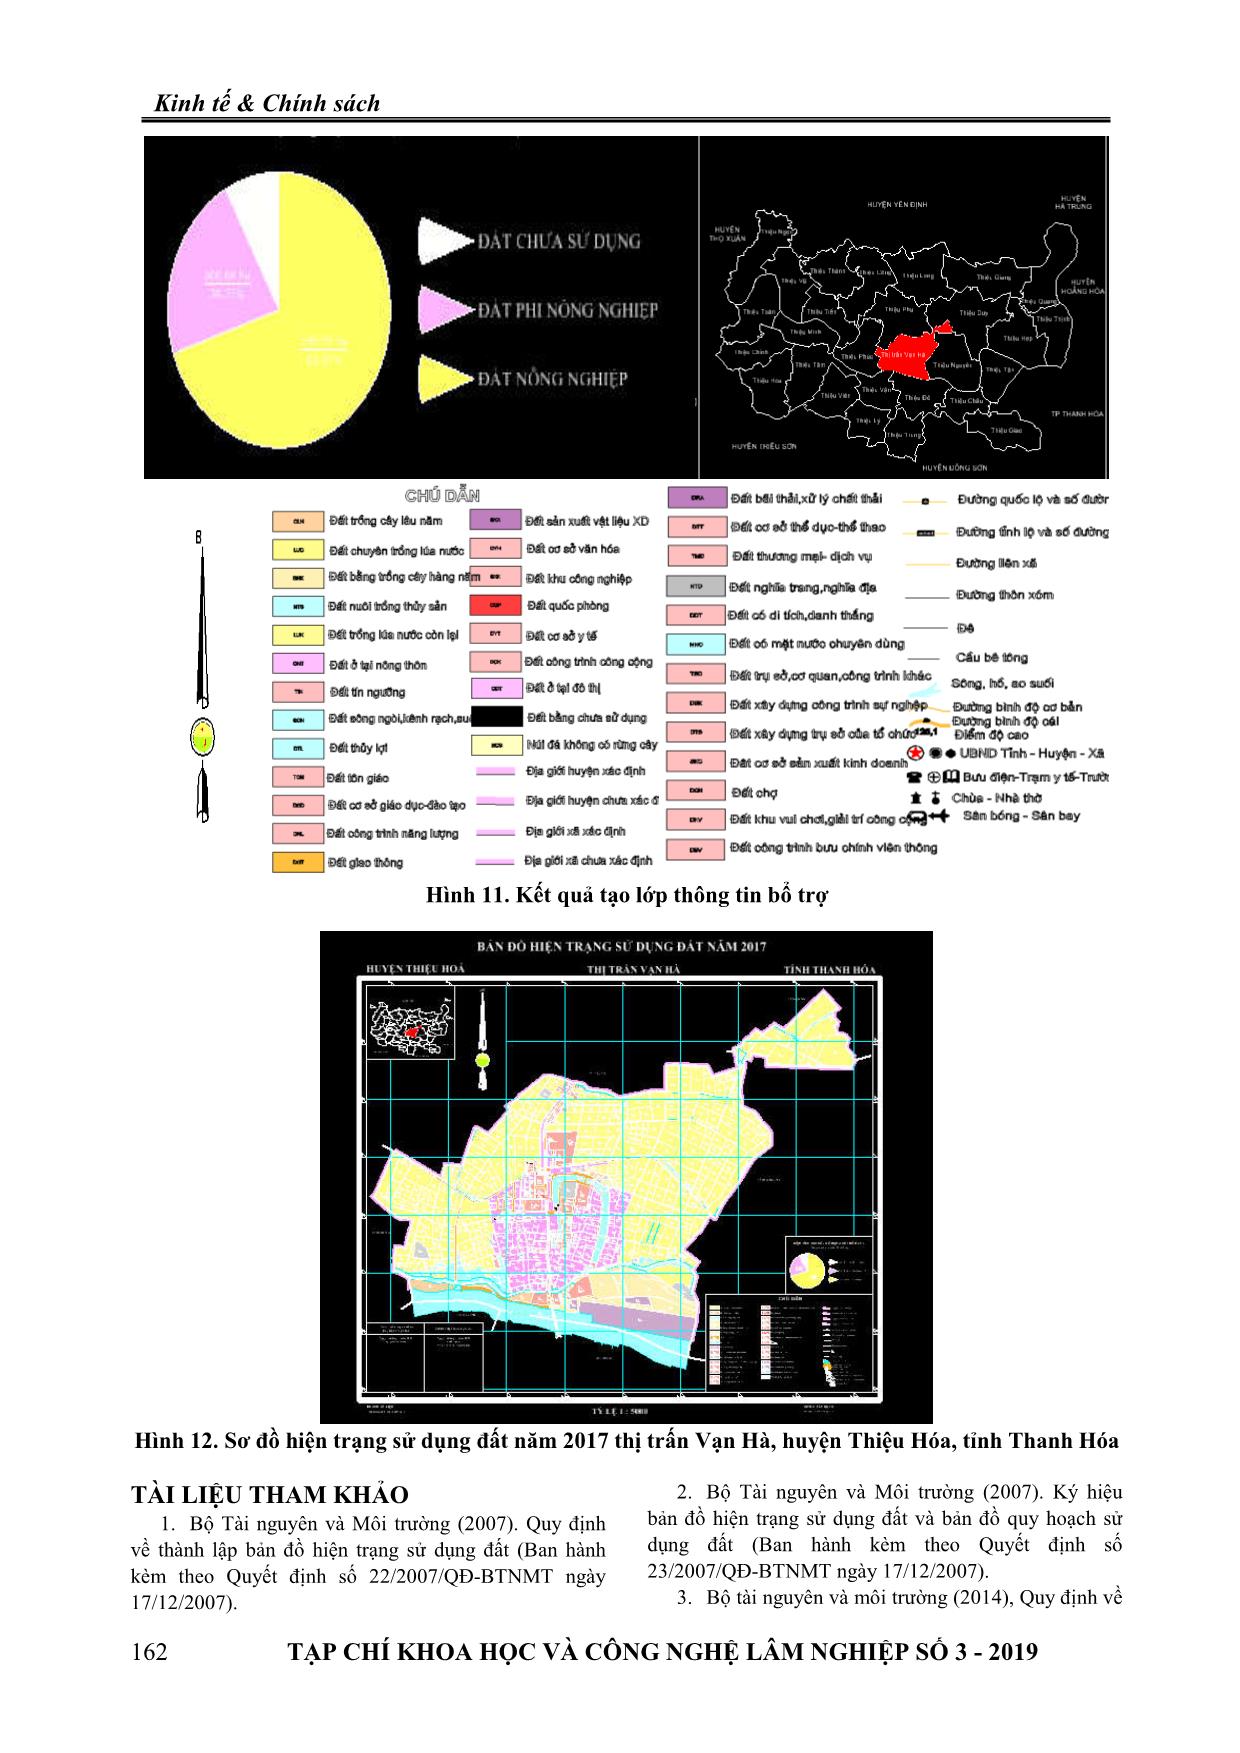 Thống kê đất đai và thành lập bản đồ hiện trạng sử dụng đất tại thị trấn Vạn Hà, huyện Thiệu Hóa, tỉnh Thanh Hóa trang 9